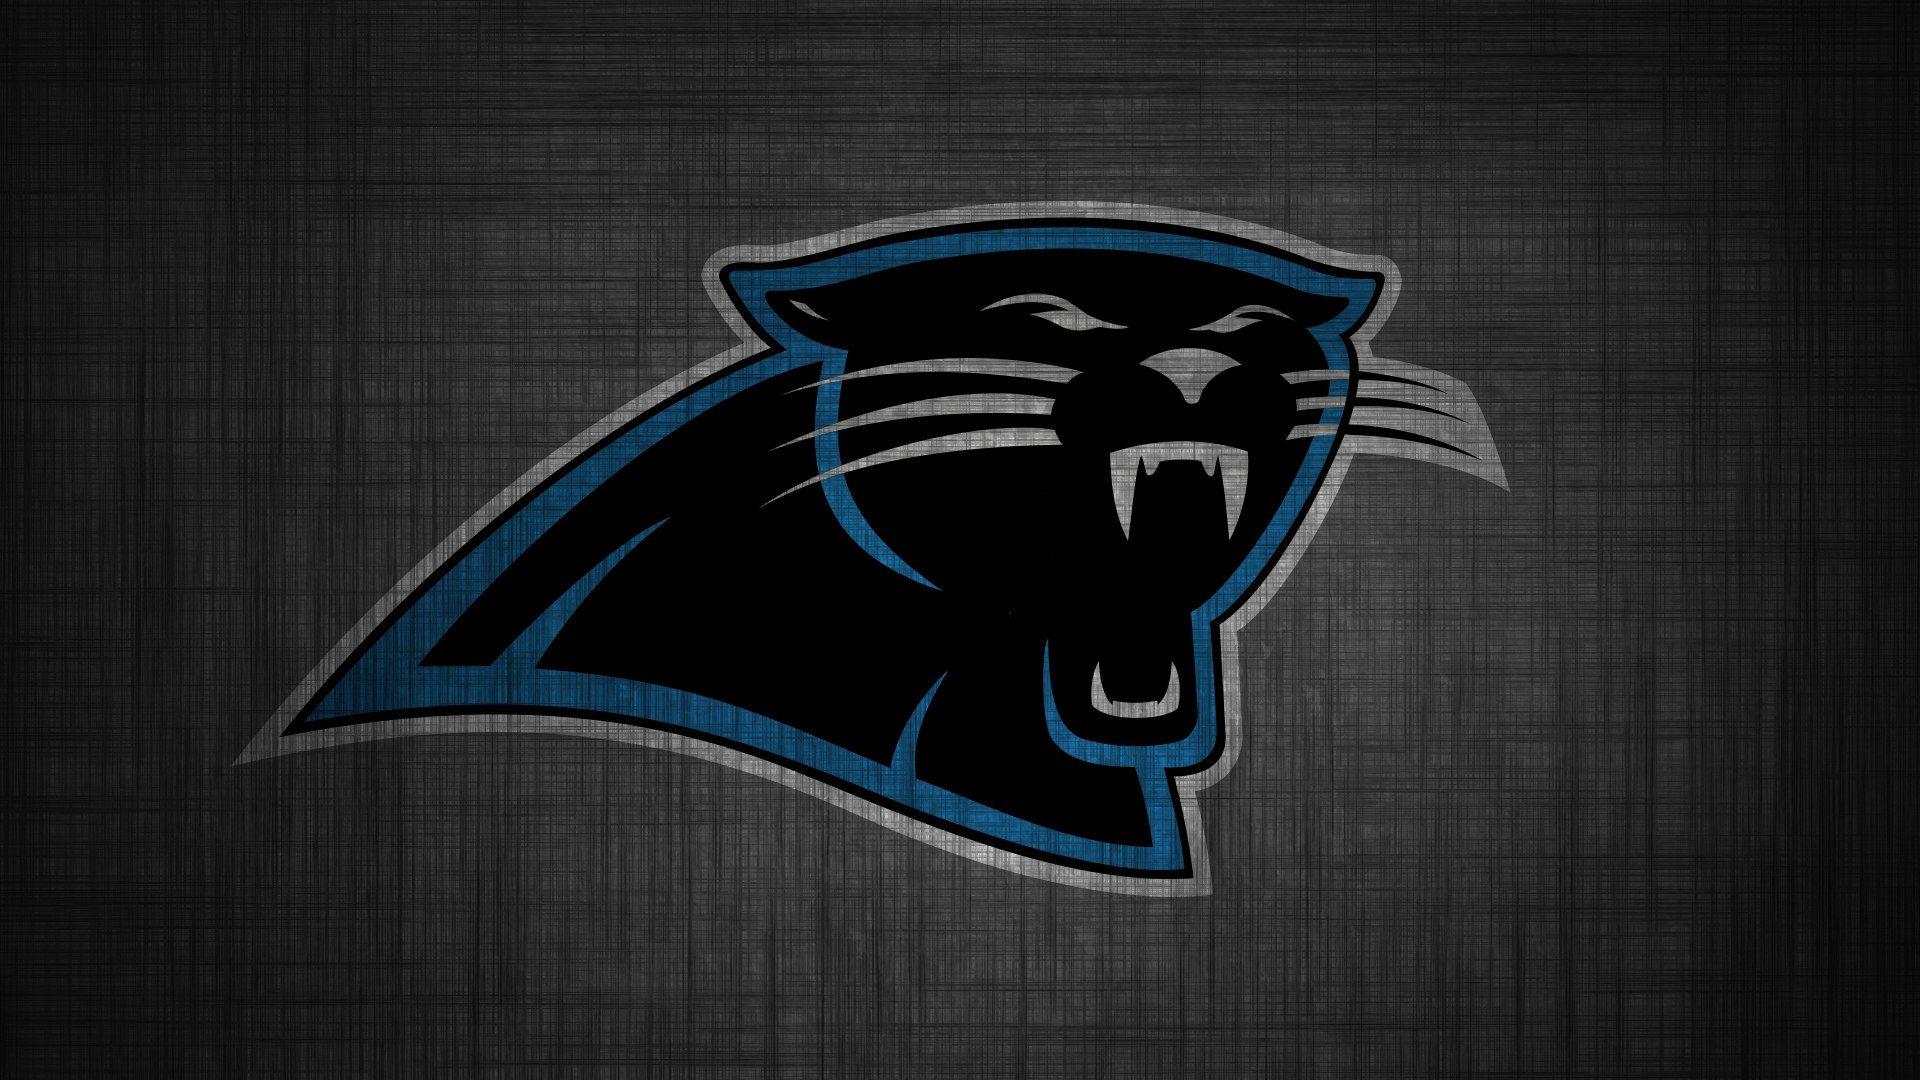 Carolina Panthers Logo Wallpaper HD. Wallpaper, Background